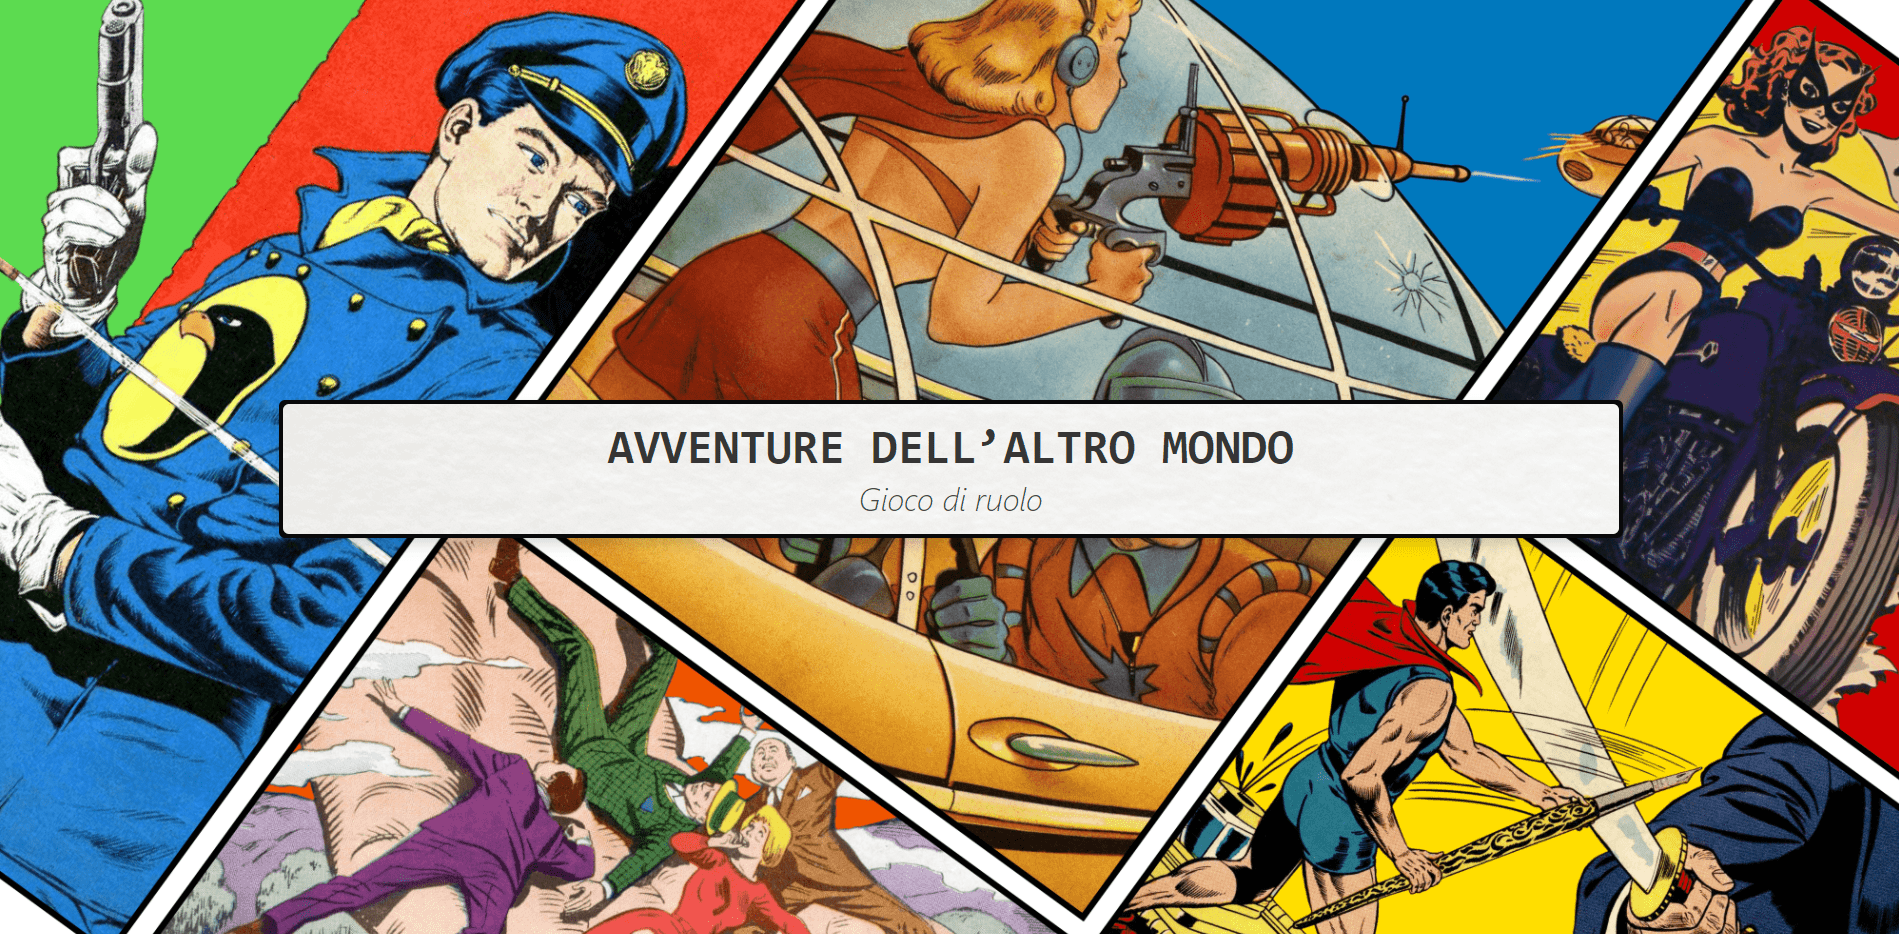 Avventure dell'altro mondo (AAM) - Italian Version